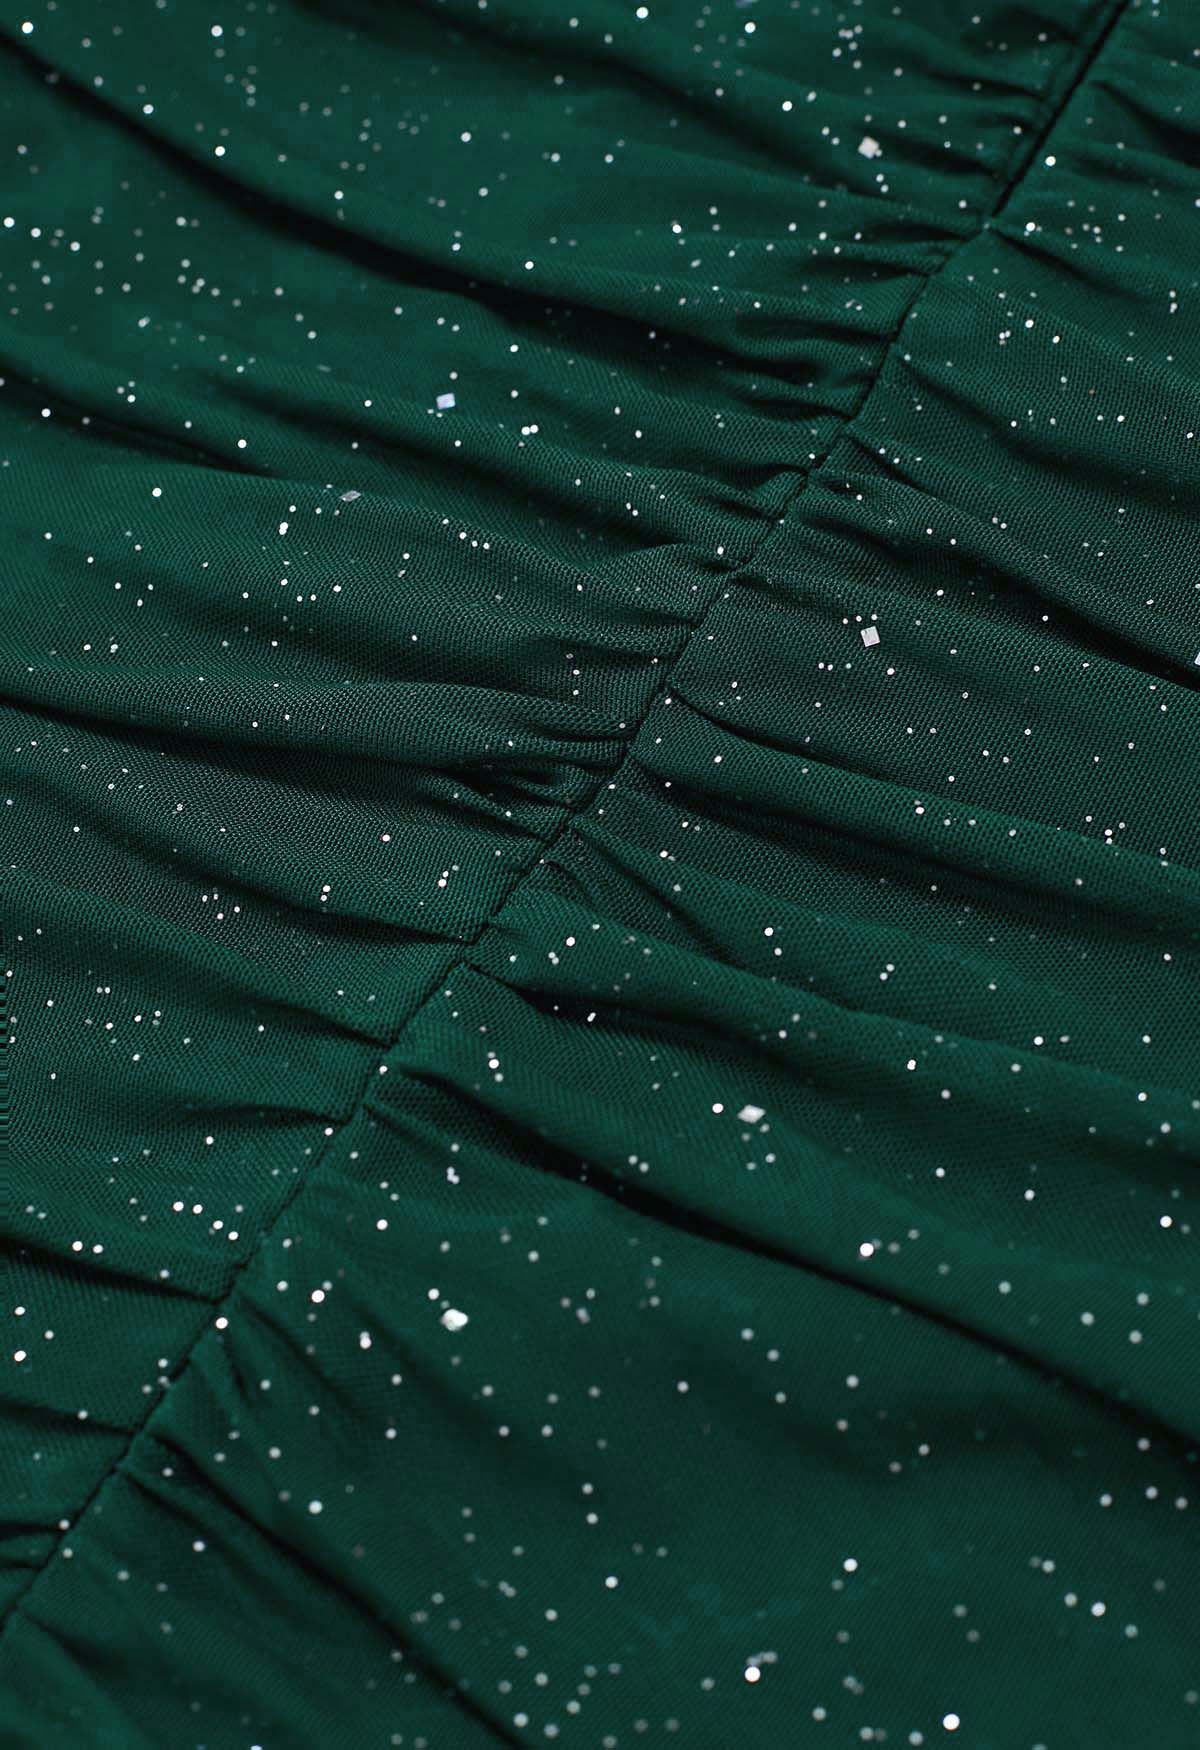 Mini-robe moulante en maille froncée à col en V pailleté en vert foncé